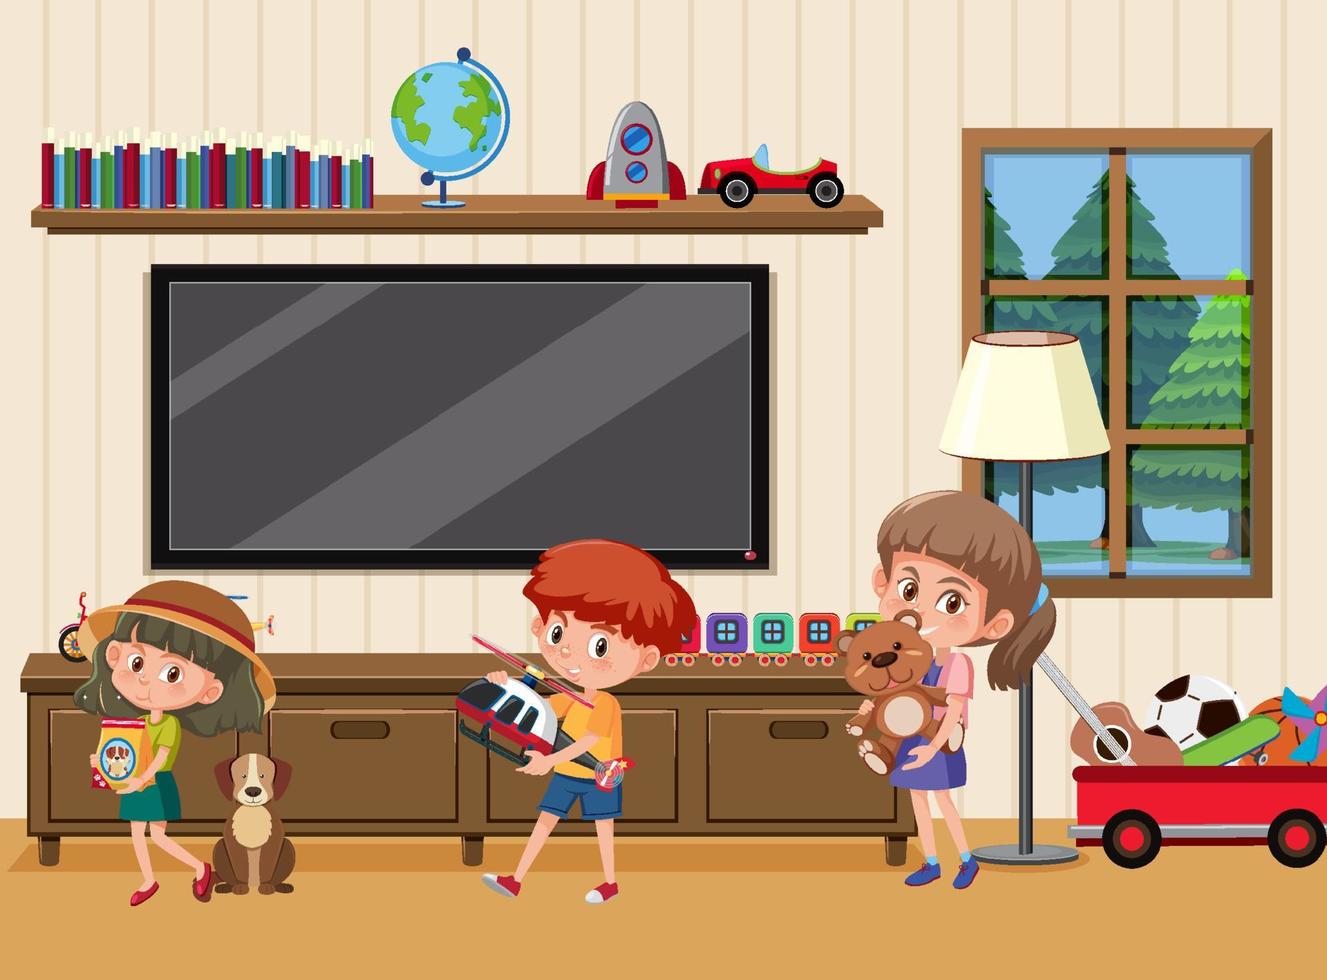 Living room scene with children cartoon character vector